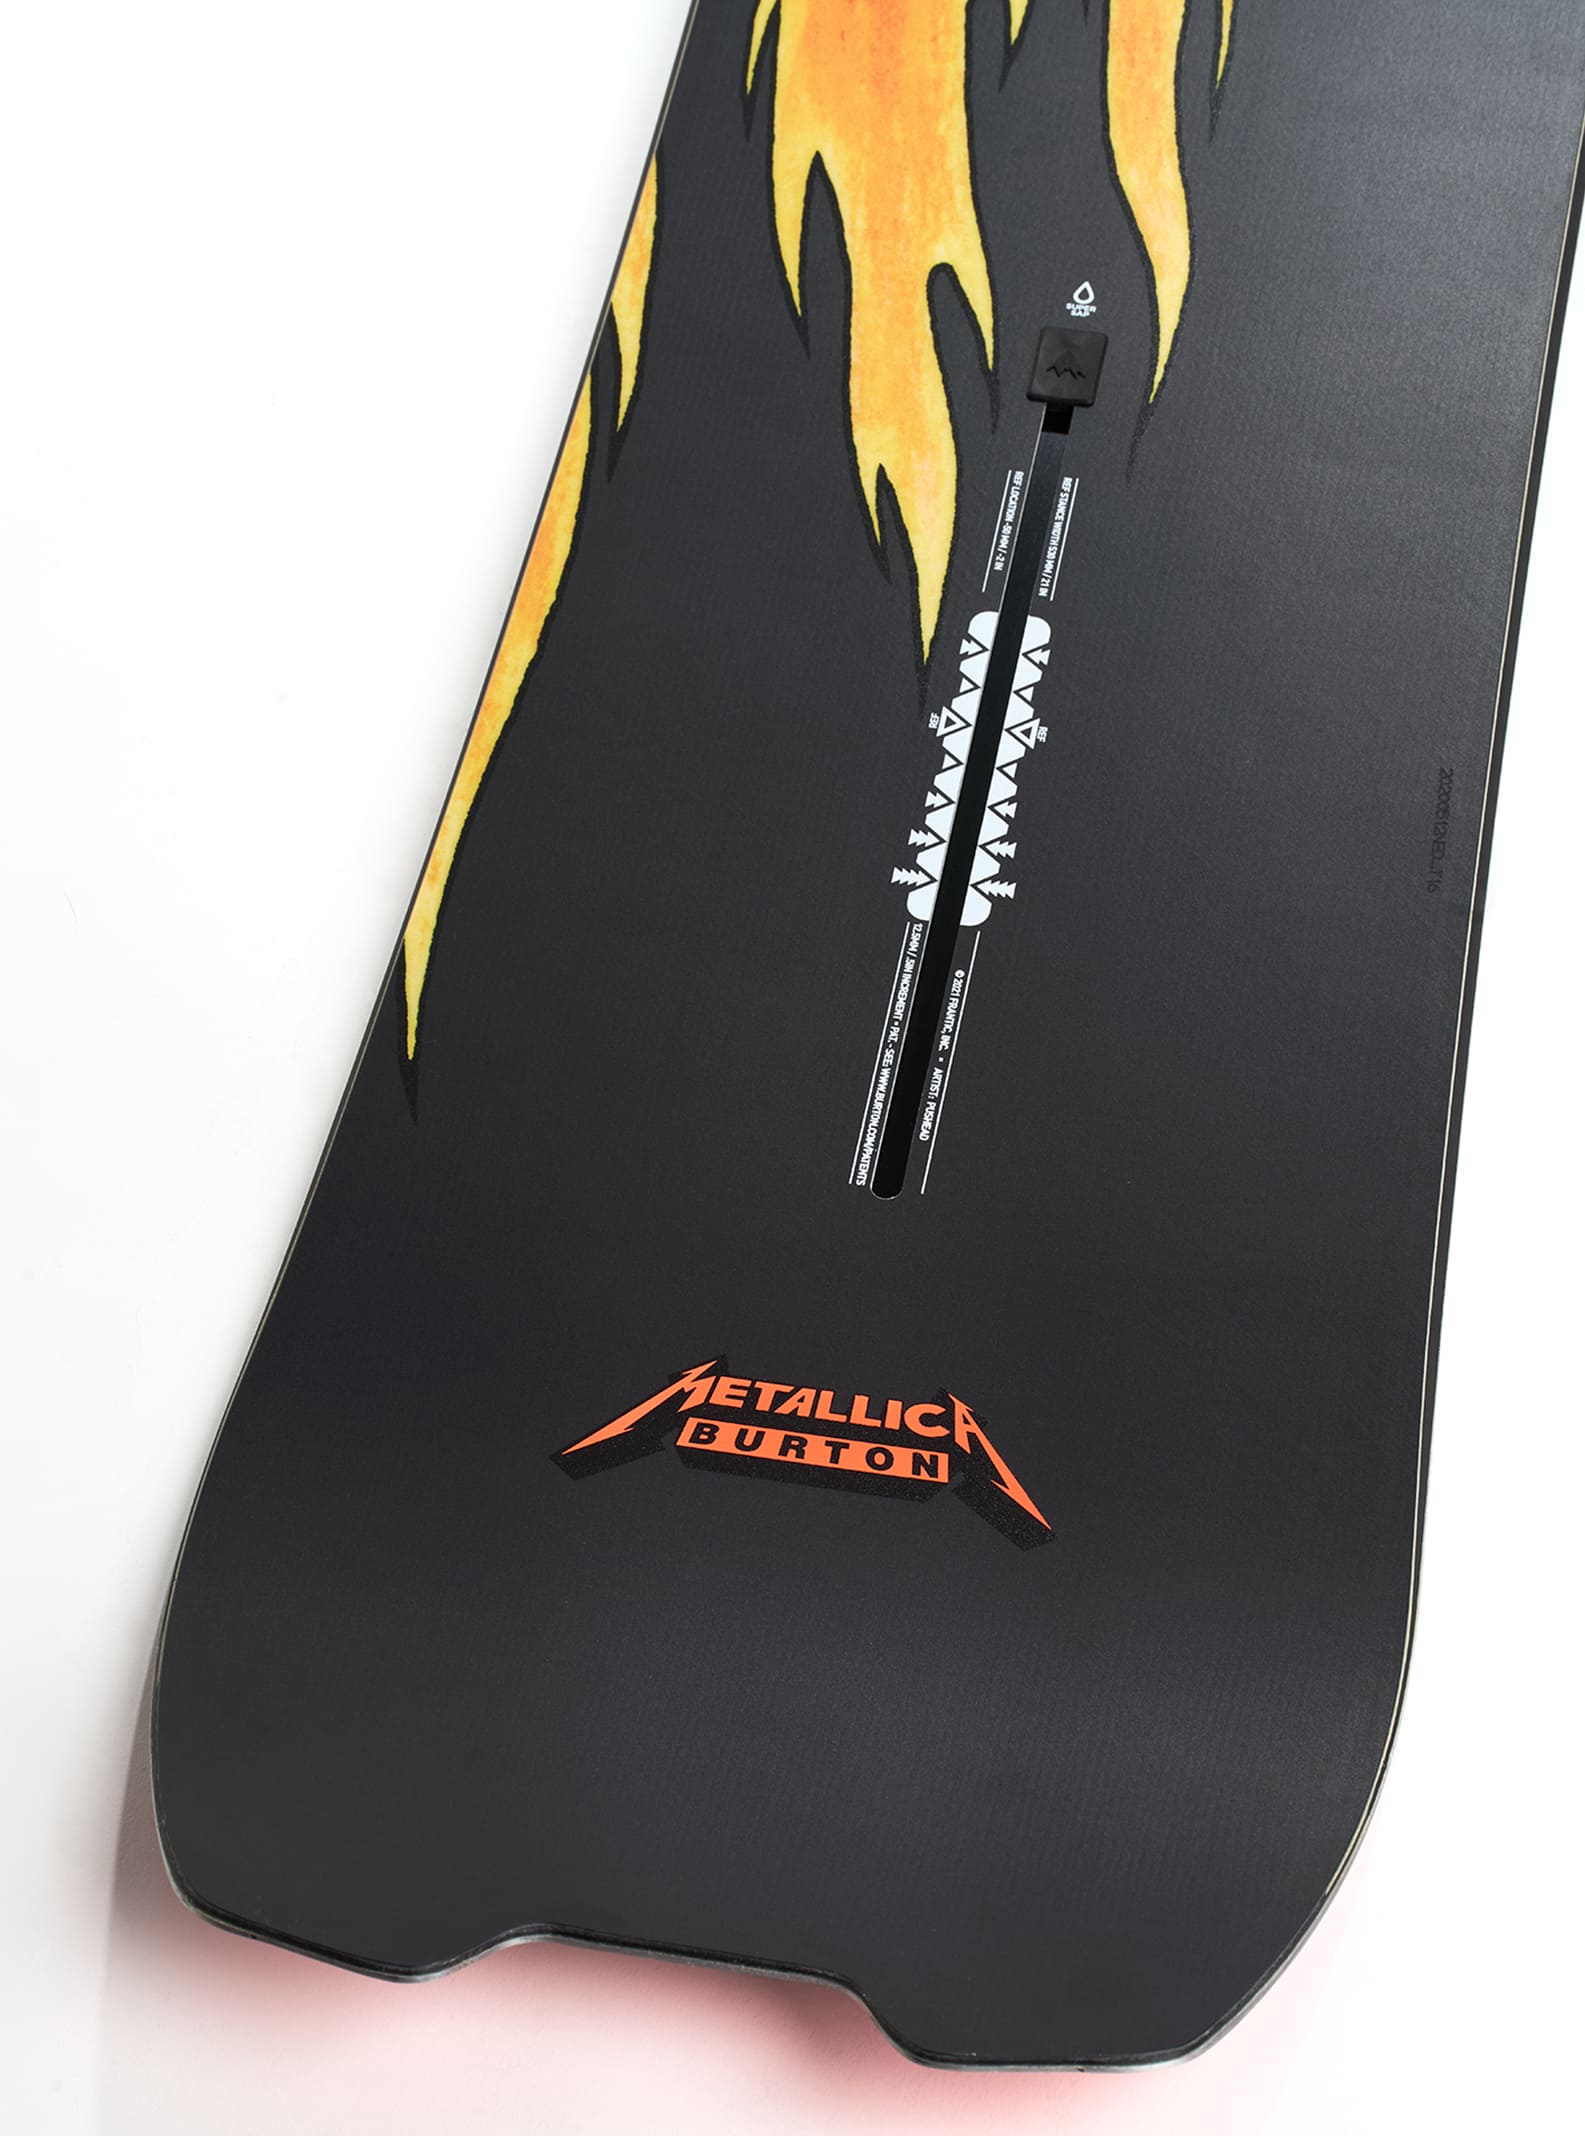 Burton Metallica Skeleton Key Snowboard | Burton.com Spring 2021 US